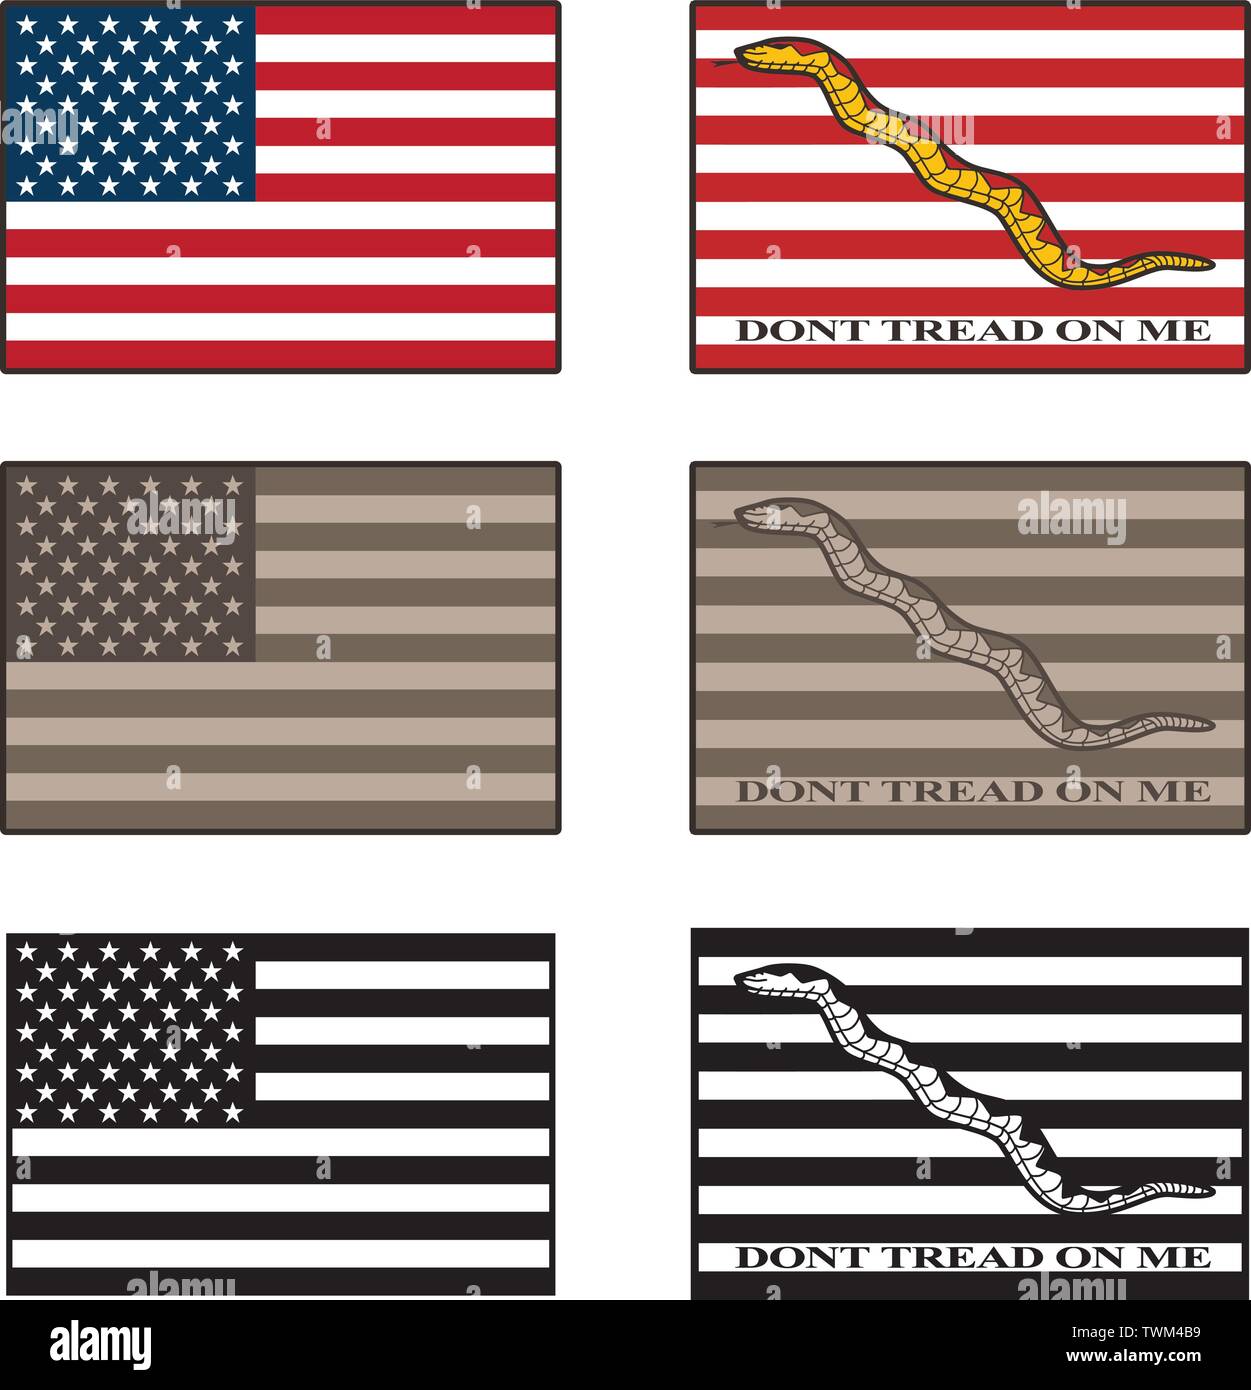 Stati Uniti d'America e Dont battistrada su di me bandiera isolato illustrazione vettoriale impostato in full color, desert camouflage di toni e nero Illustrazione Vettoriale